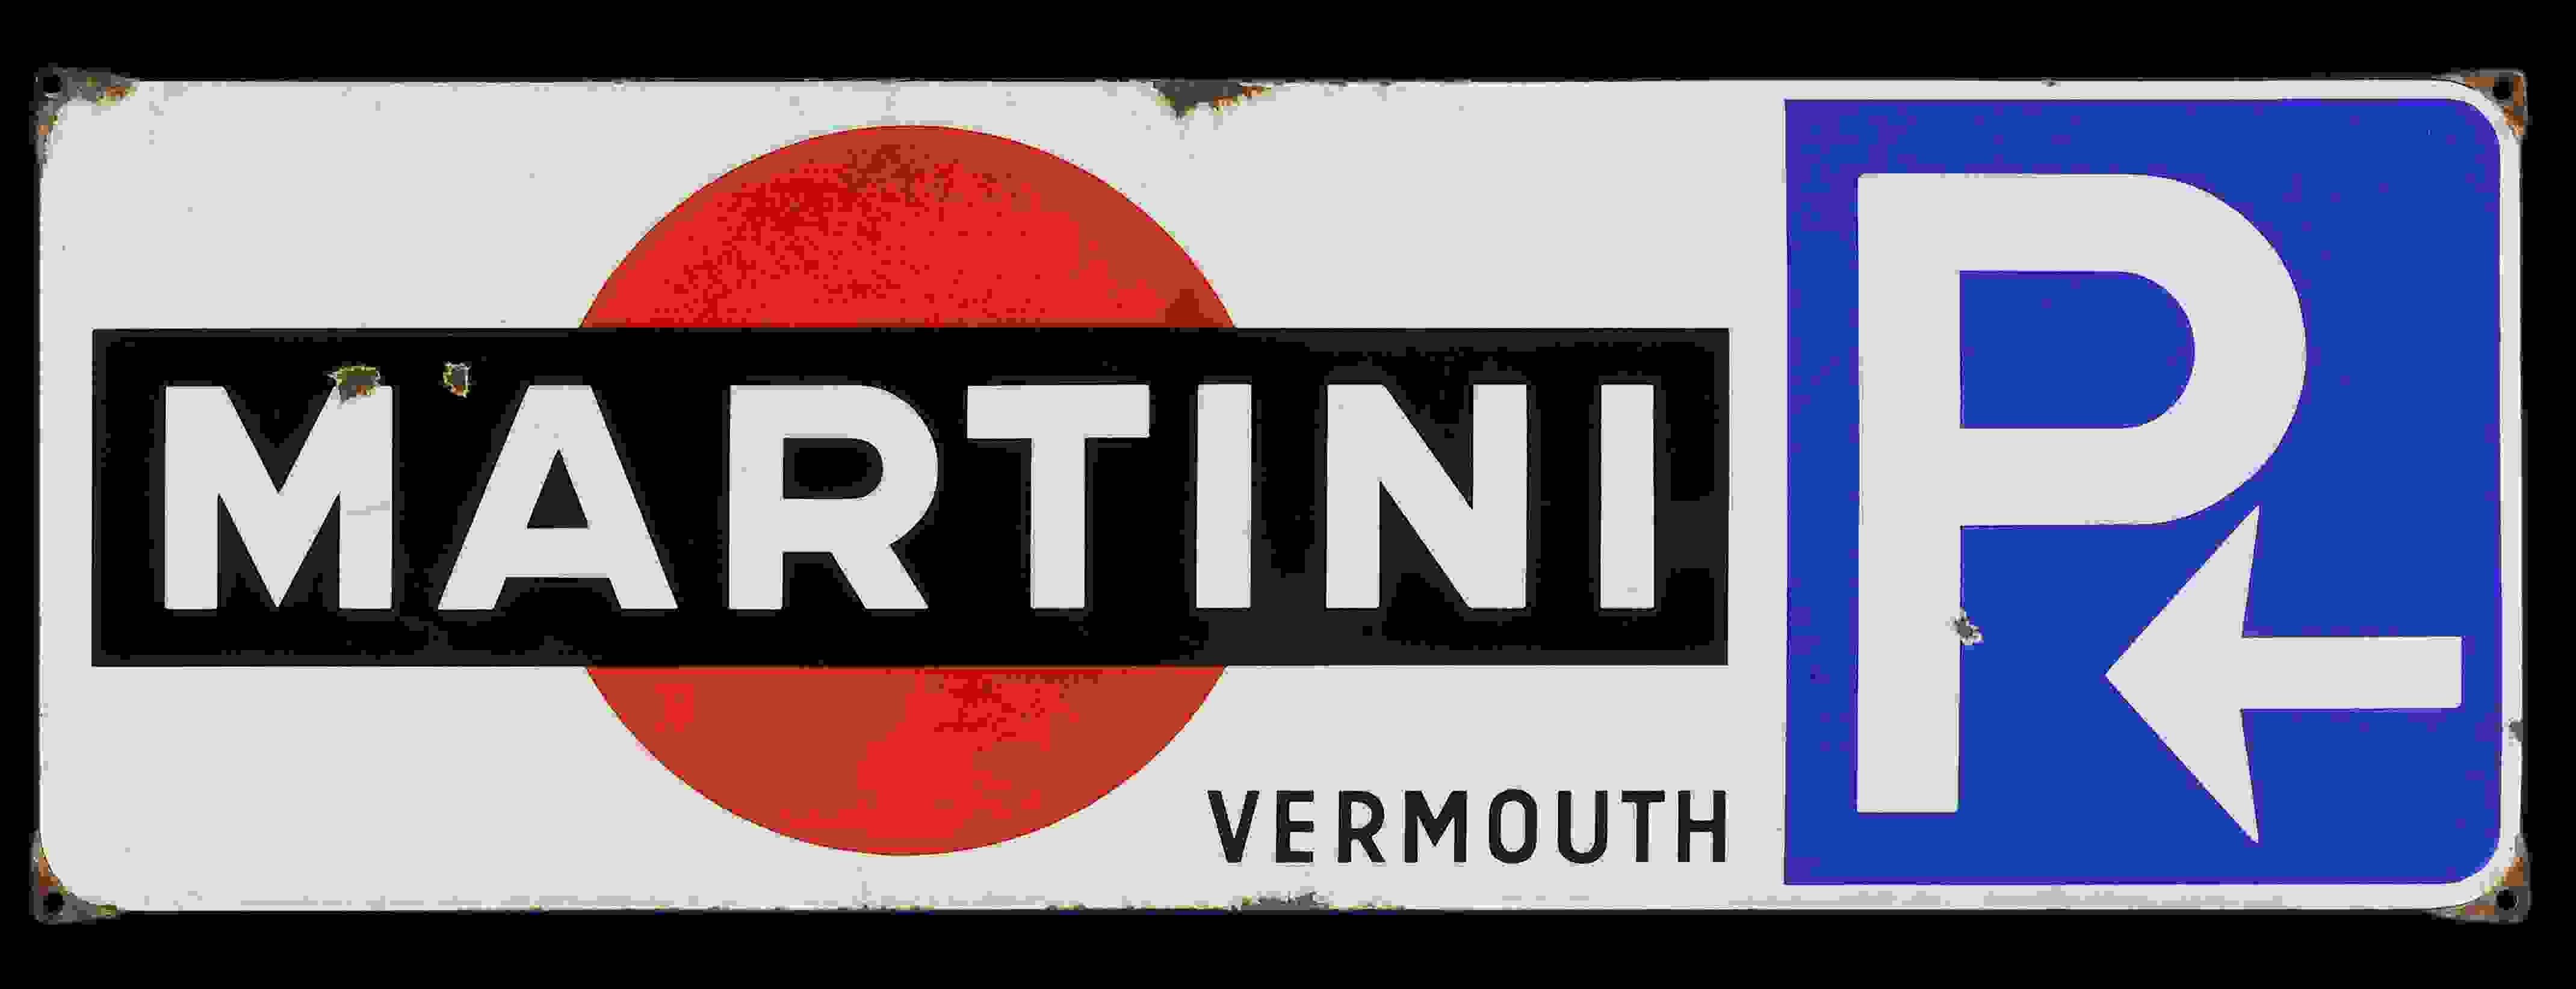 Martini P 